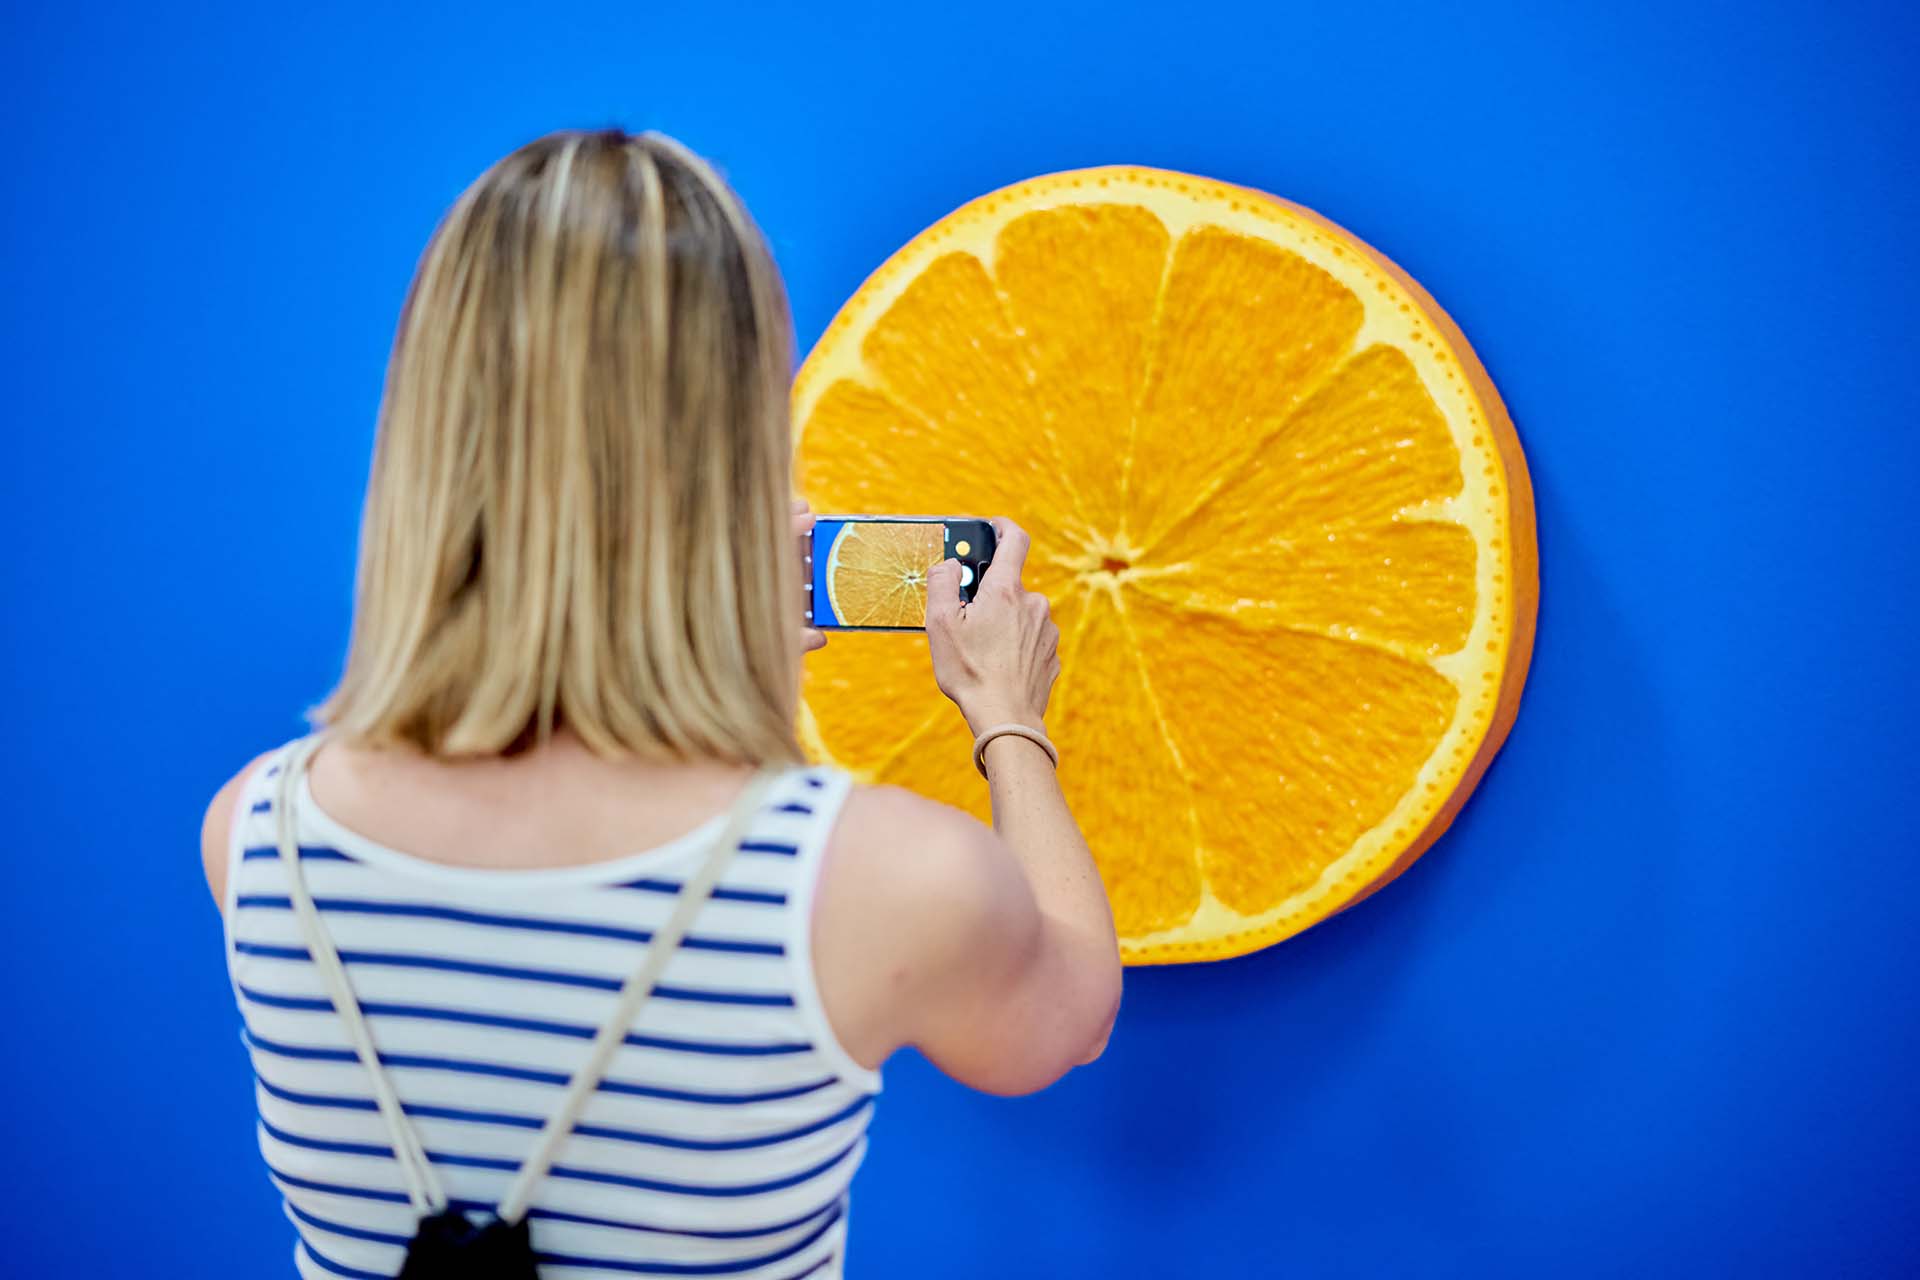 Frau, die von hinten beim Fotografieren eines orangenscheibenförmigen Kunstwerks zu sehen ist.